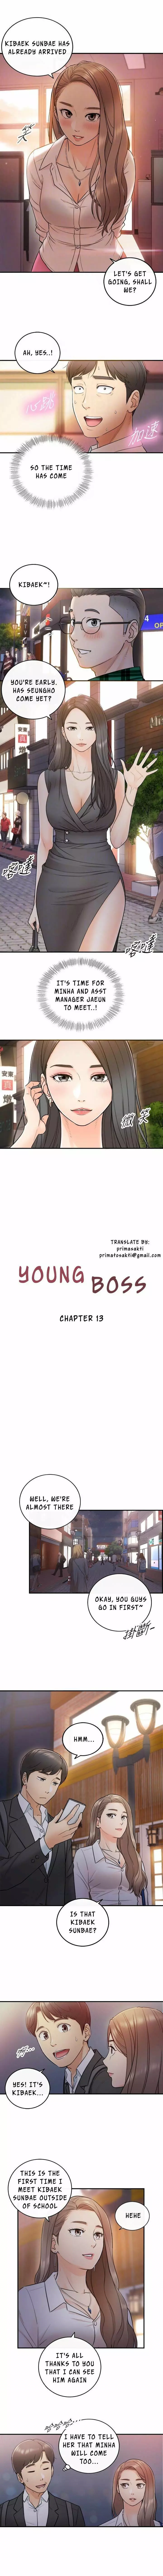 Young Boss Manhwa 01-73 111ページ